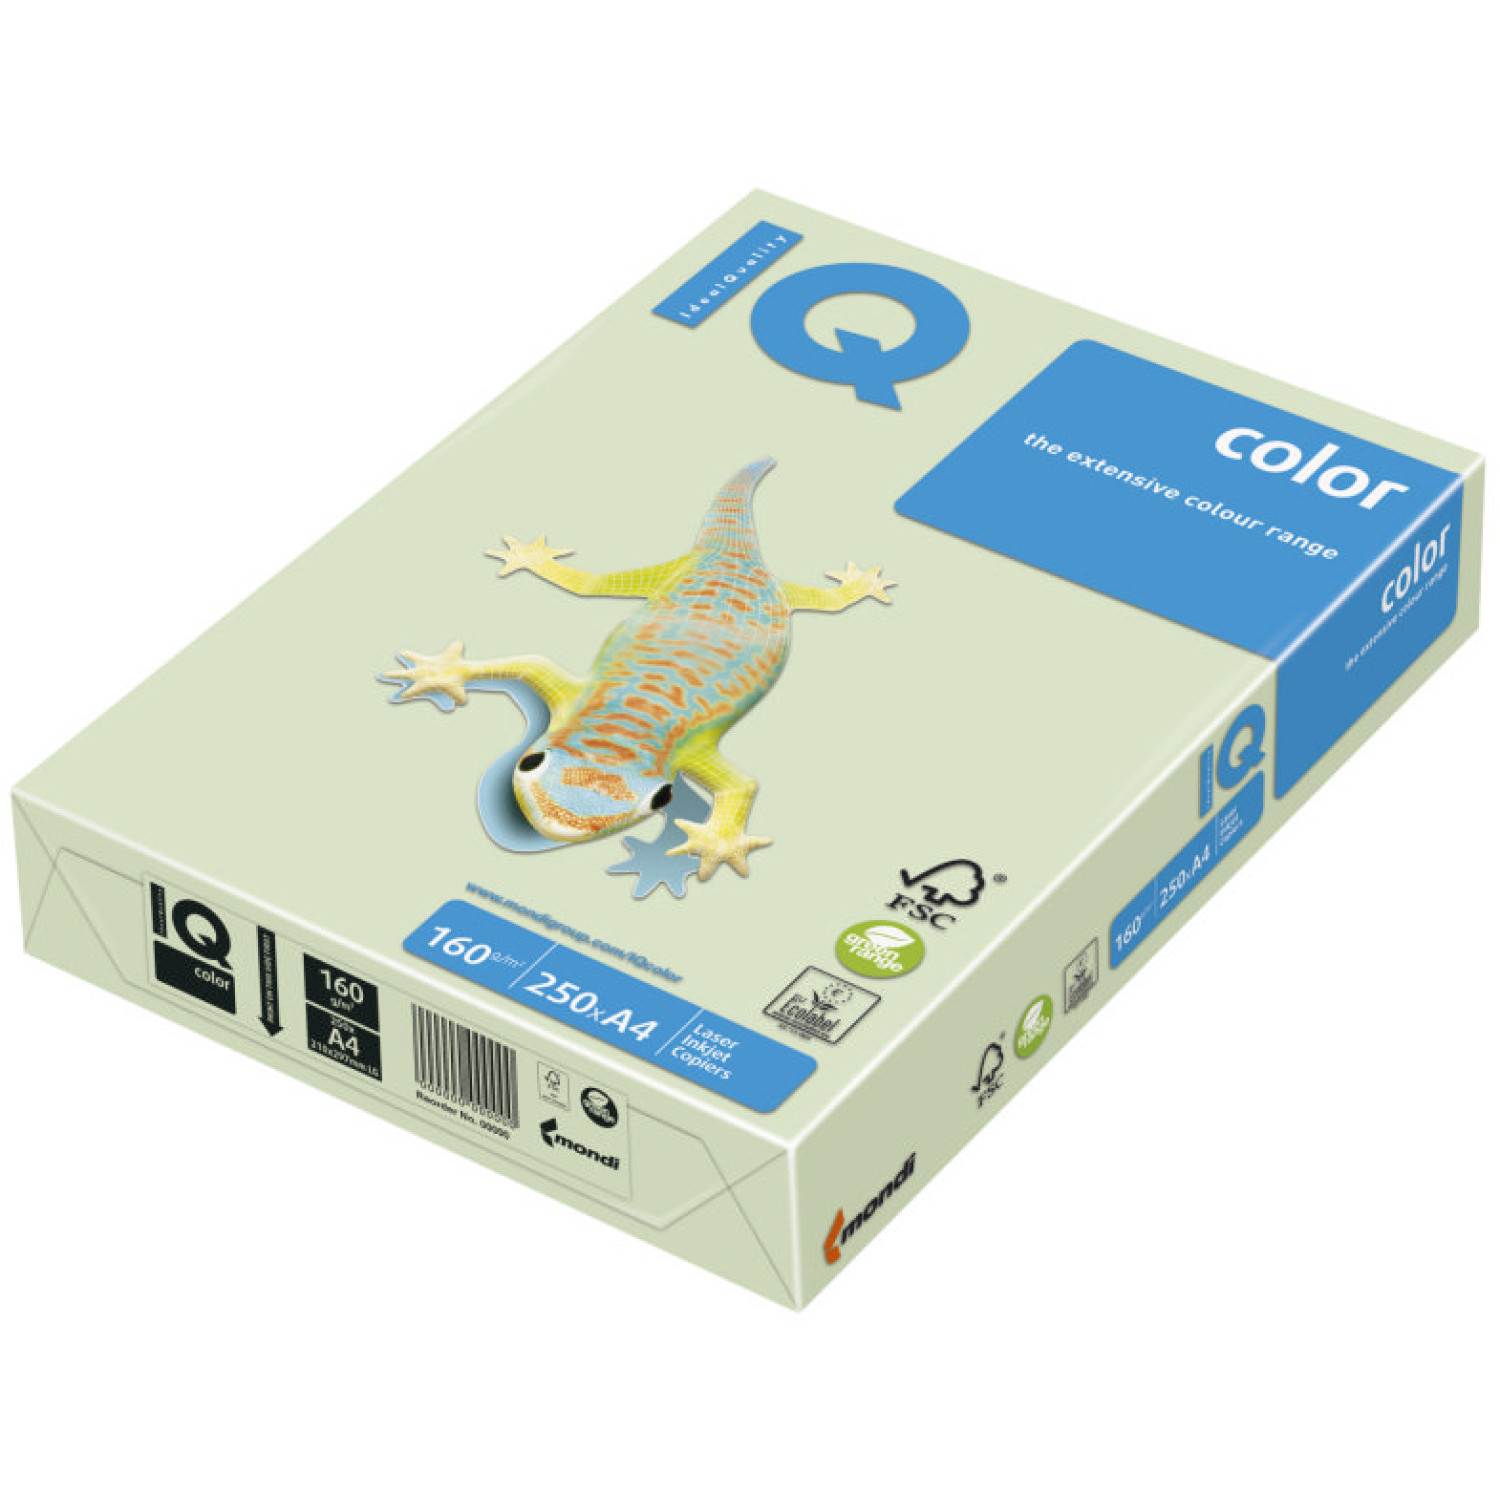 Копирен картон IQ GN27, 160 гр., зелен